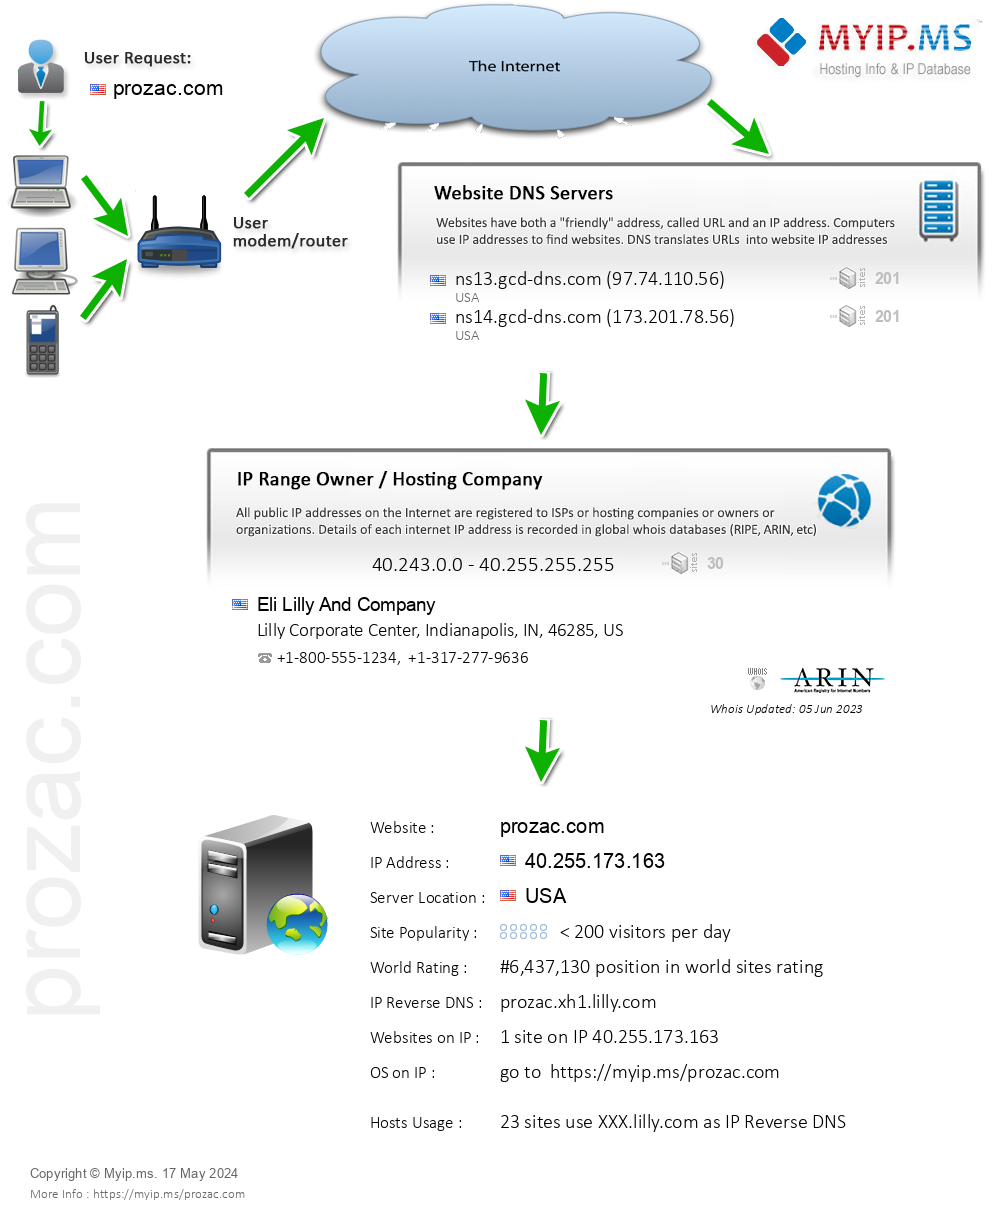 Prozac.com - Website Hosting Visual IP Diagram